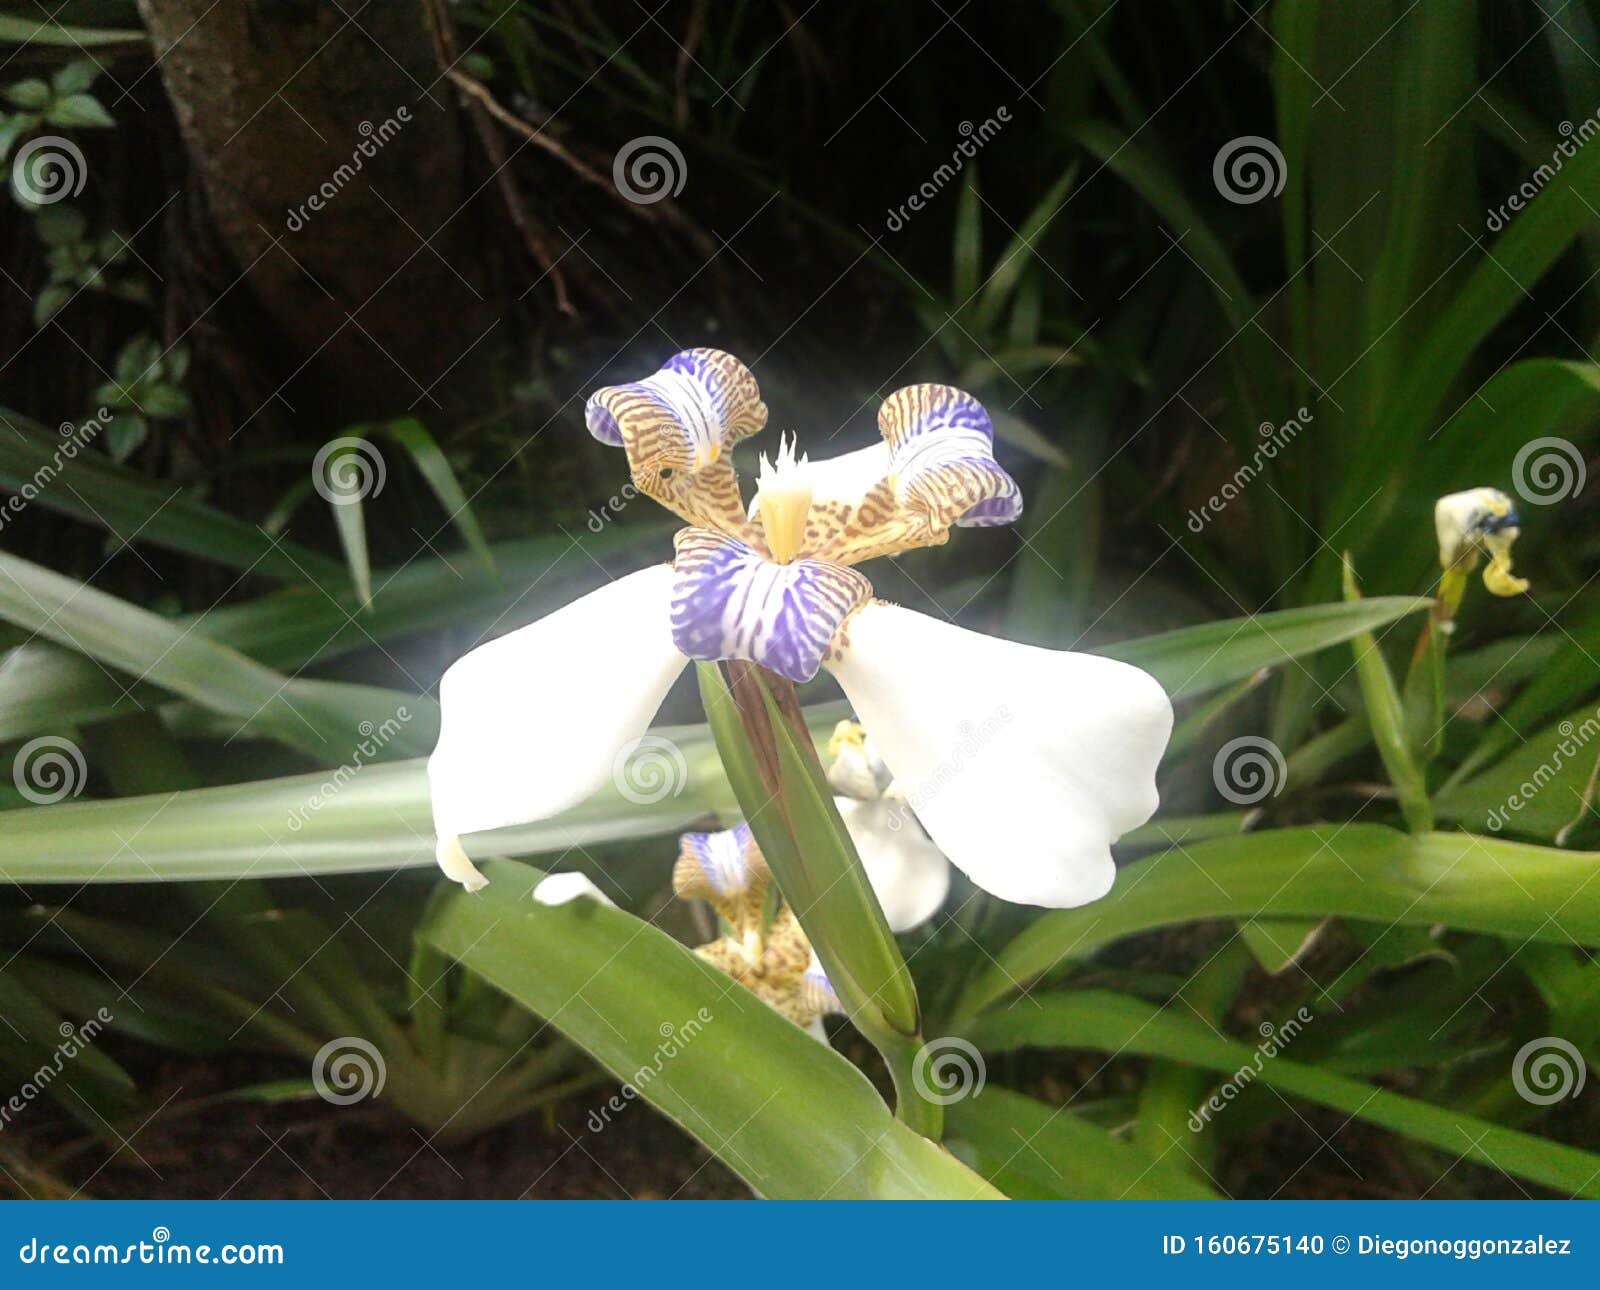 white trimezia flower - walking iris - nature - garden - plants